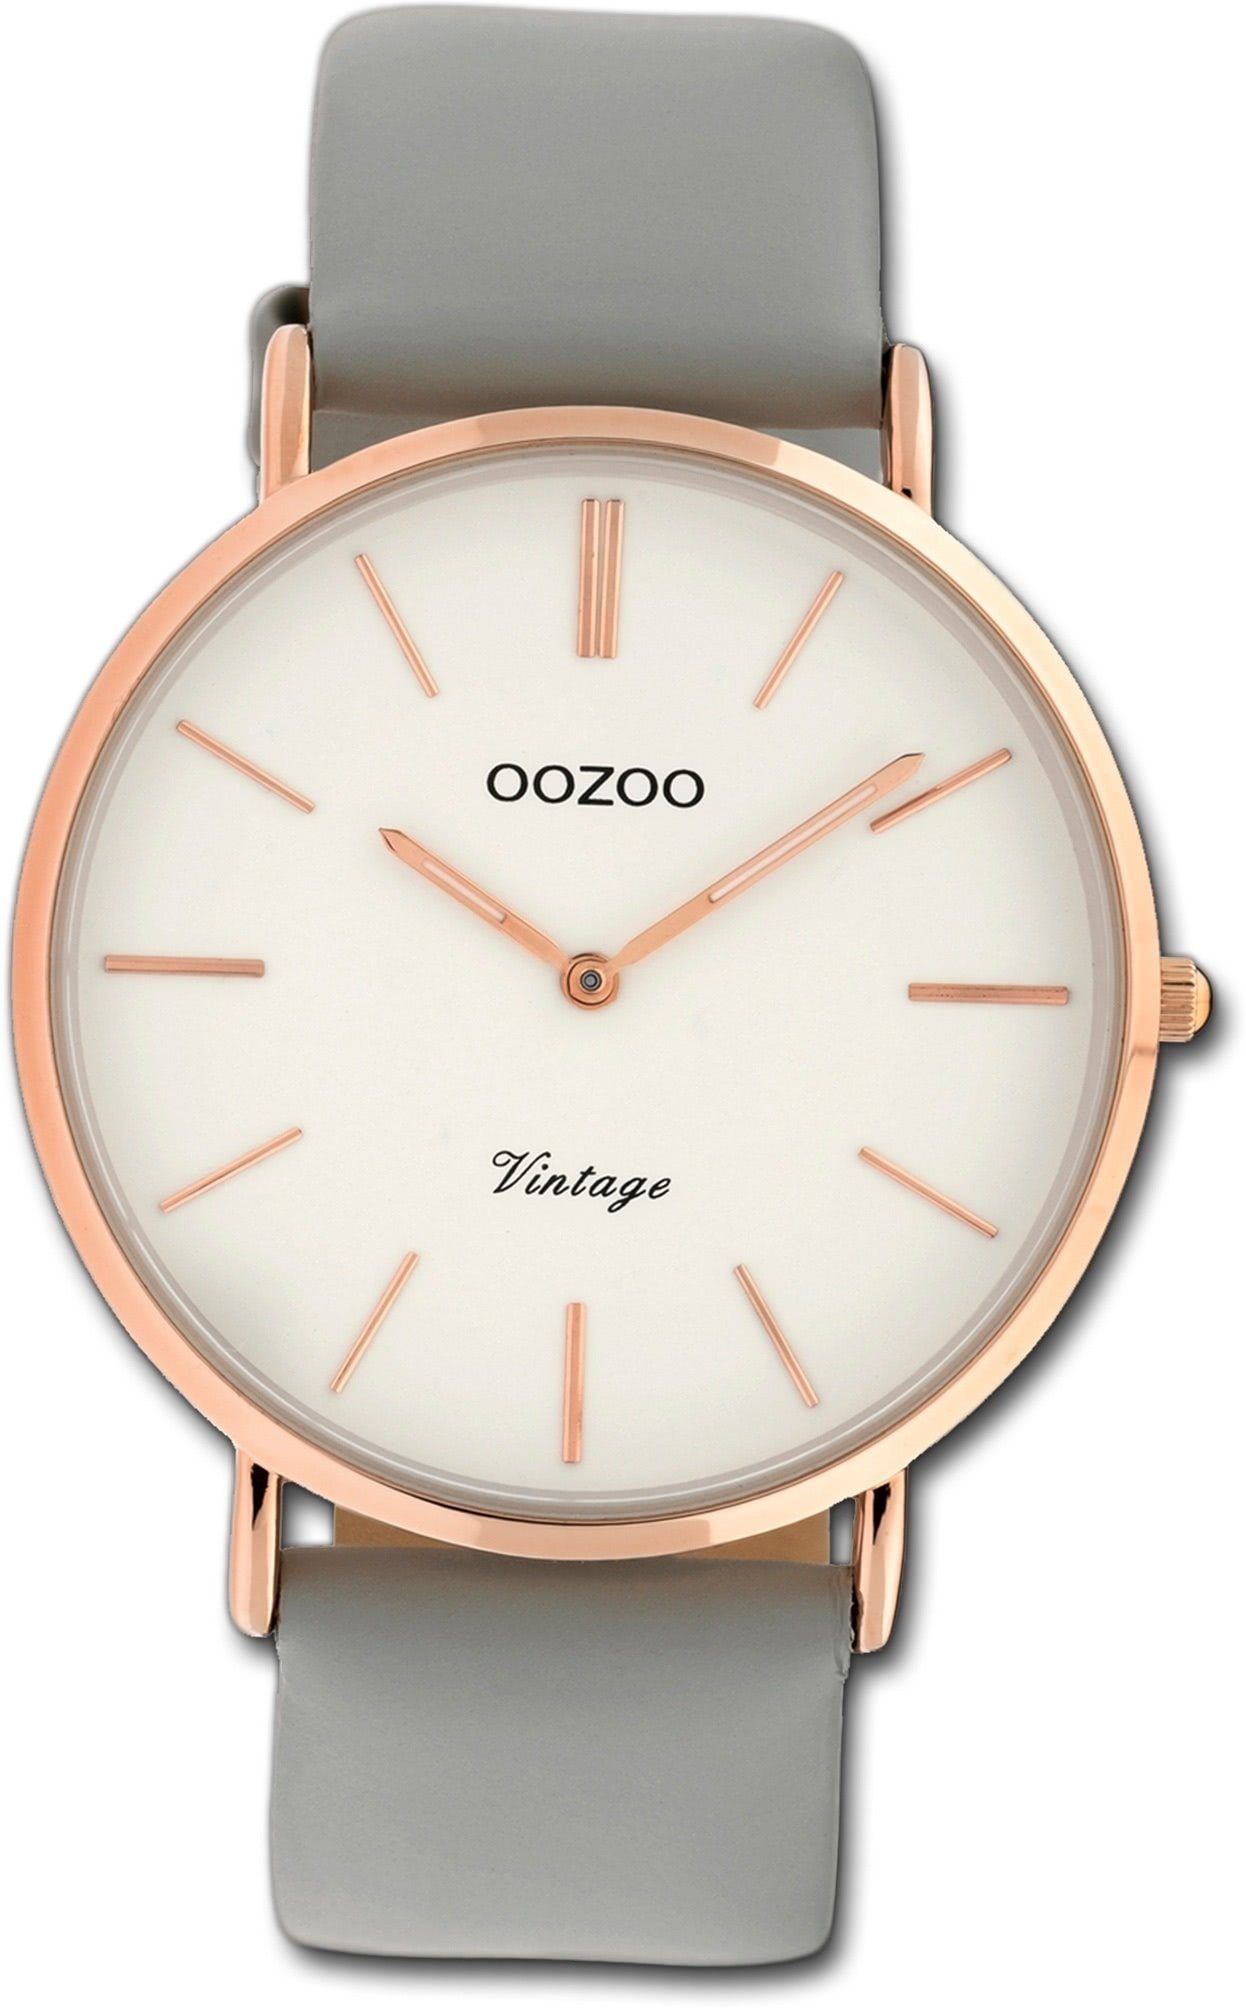 OOZOO Quarzuhr Oozoo Leder Damen Uhr C9965 Analog, Damenuhr Lederarmband grau, rundes Gehäuse, groß (ca. 40mm)